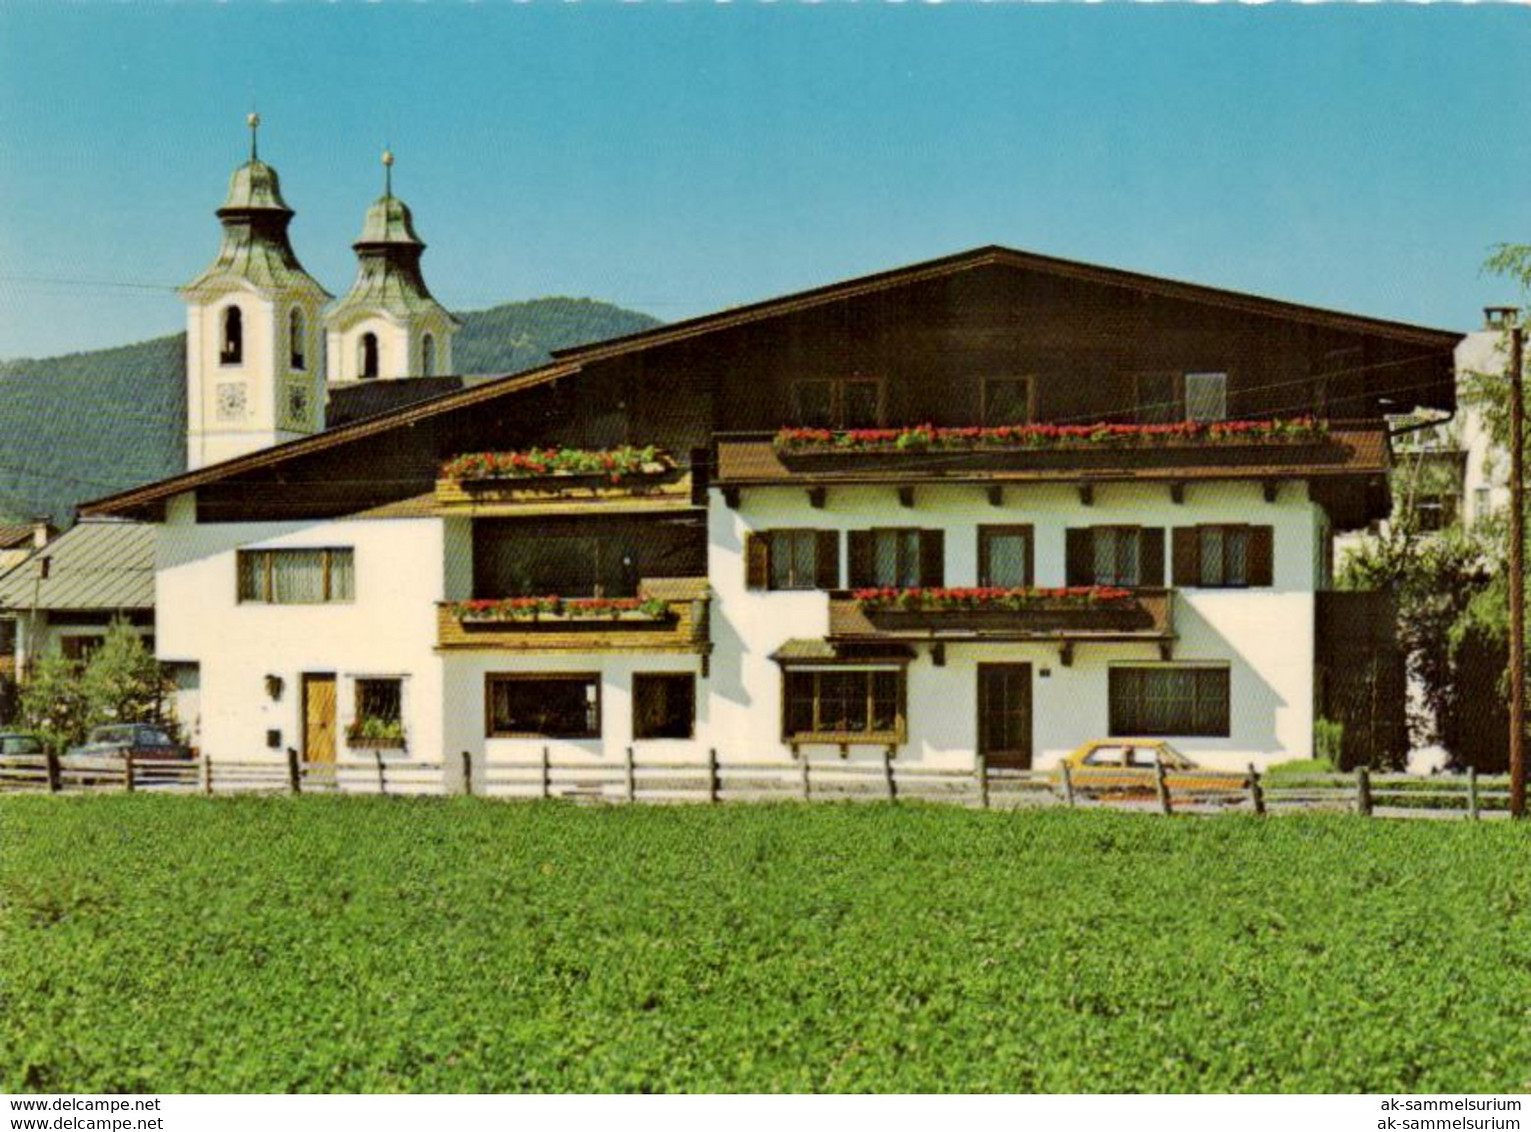 St. Johann In Tirol (D-A337) - St. Johann In Tirol